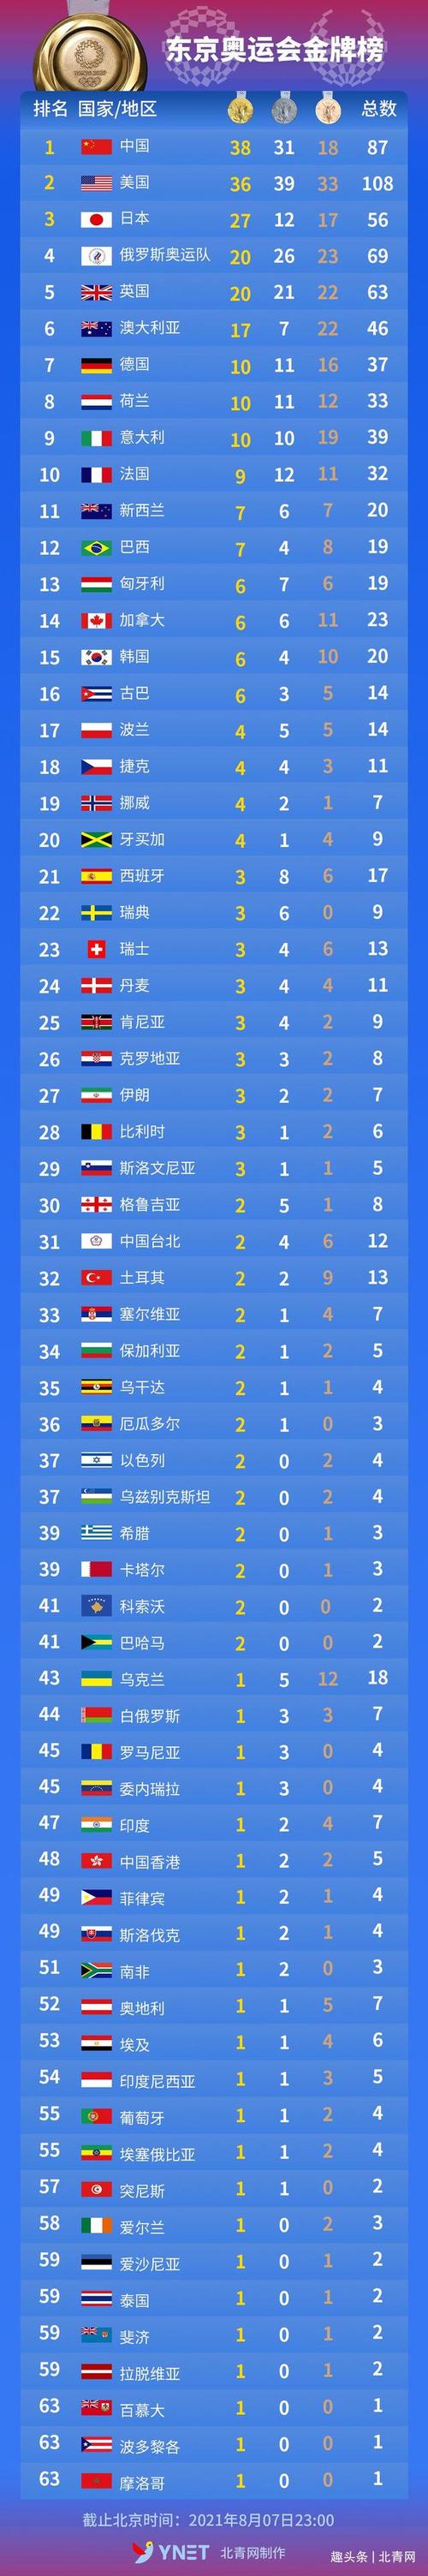 日本奥运会金牌榜排名榜,日本奥运会金牌榜排名榜最新